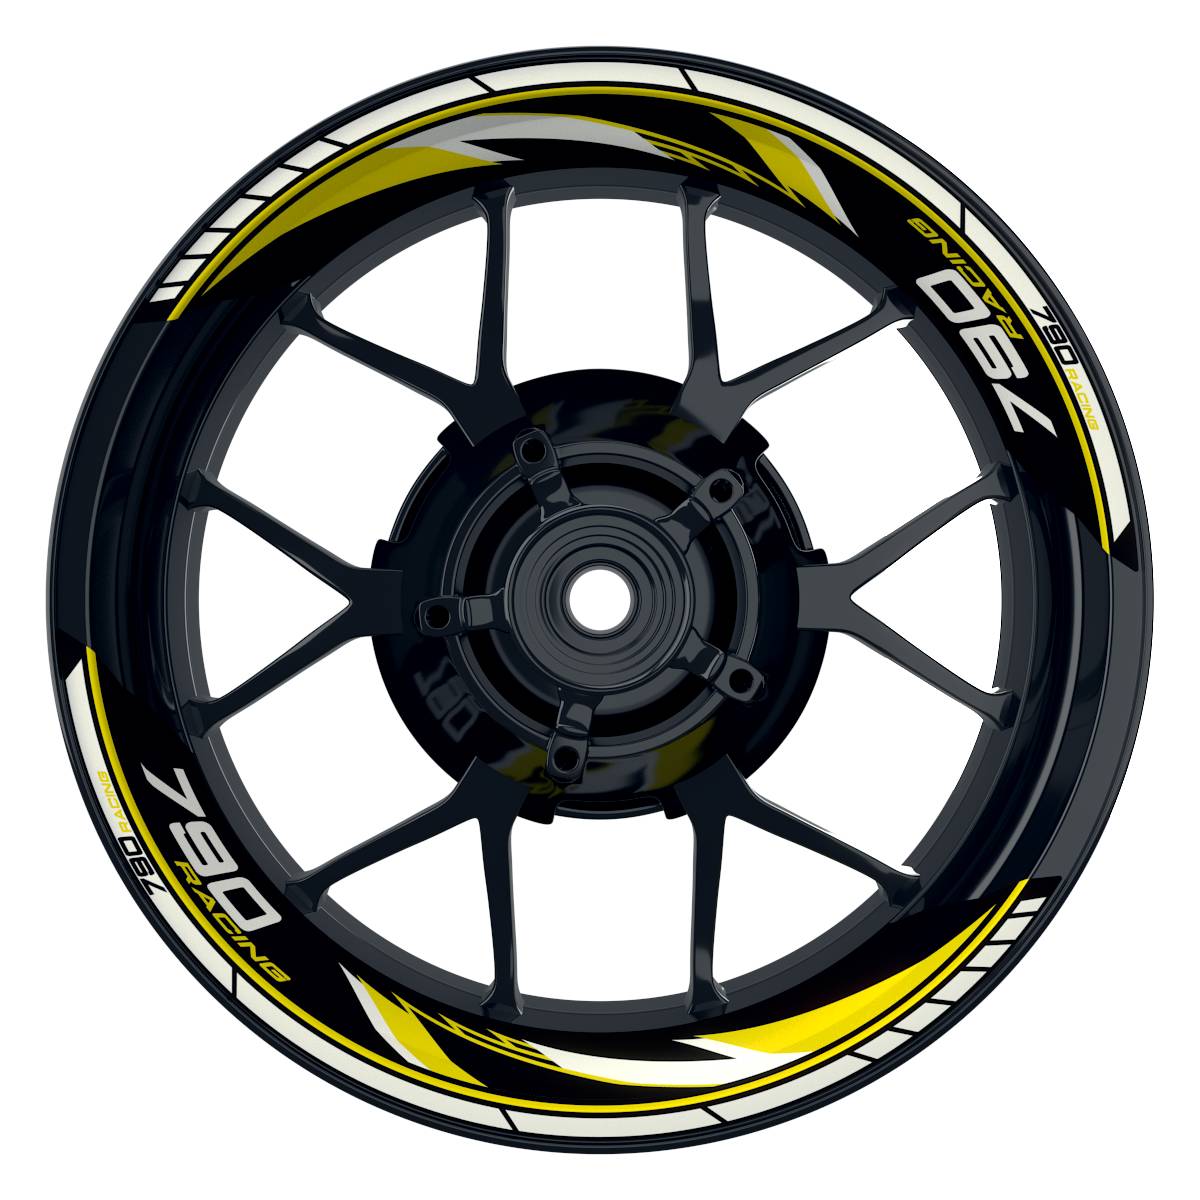 KTM Racing 790 Razor schwarz gelb Frontansicht